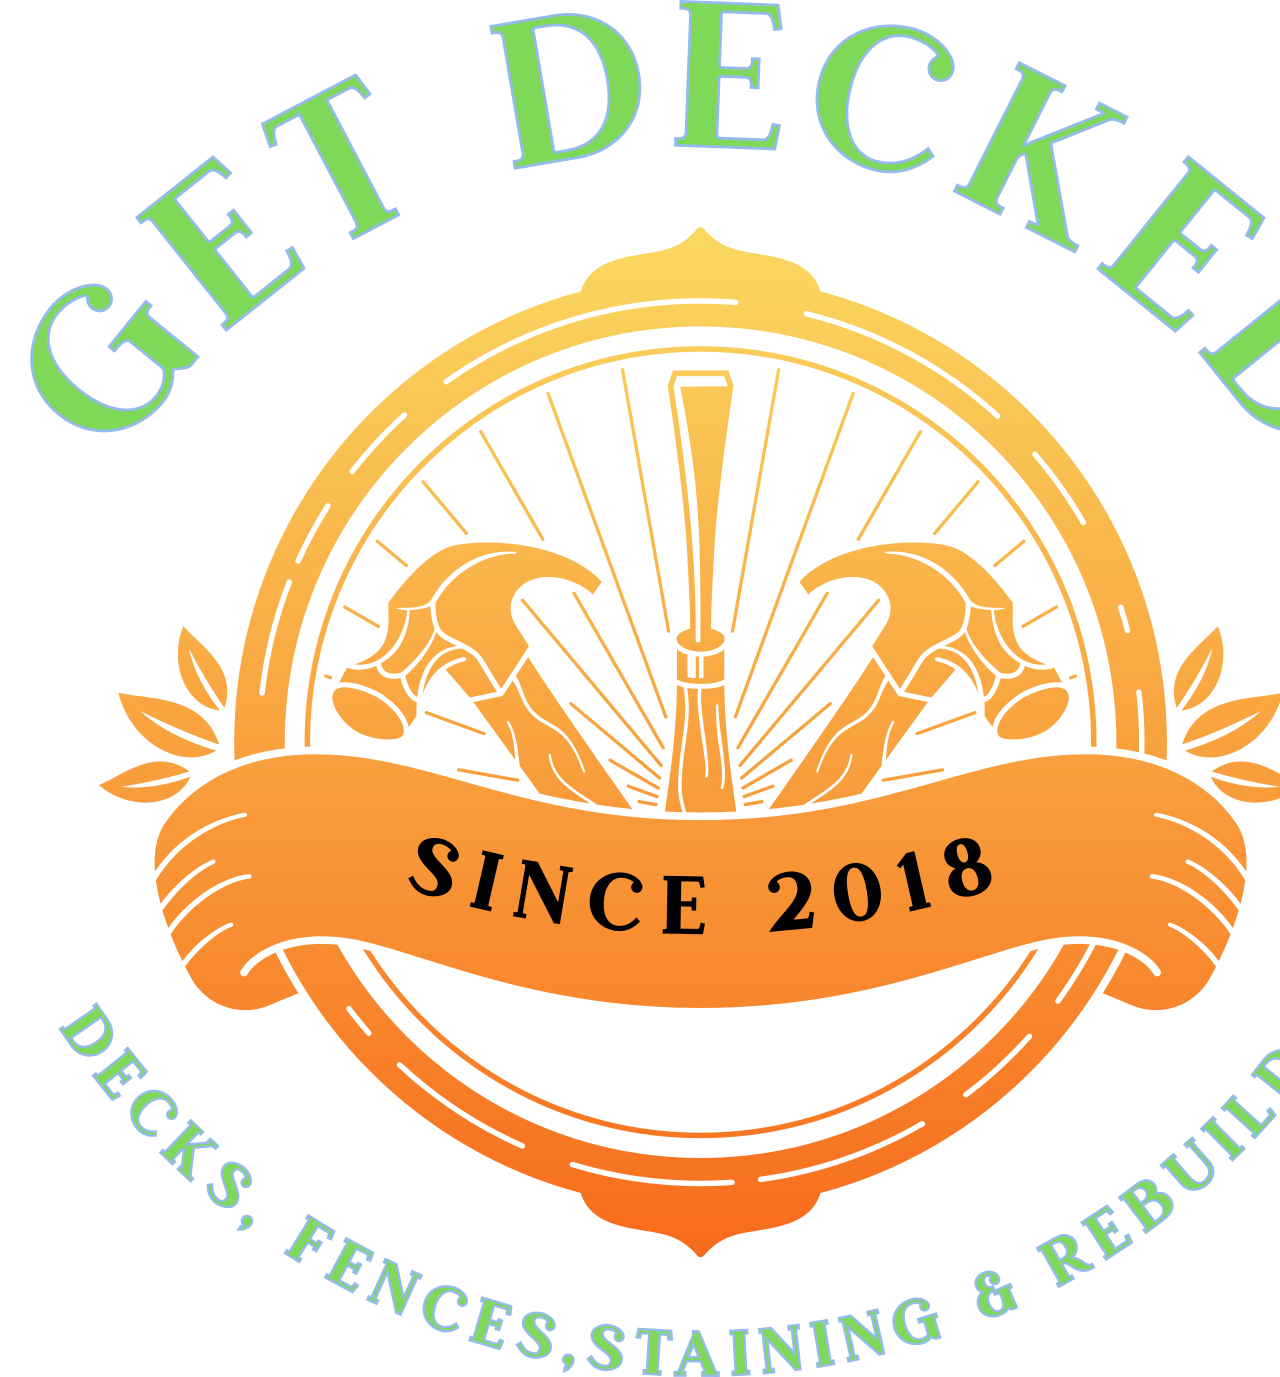 GET DECKED's logo